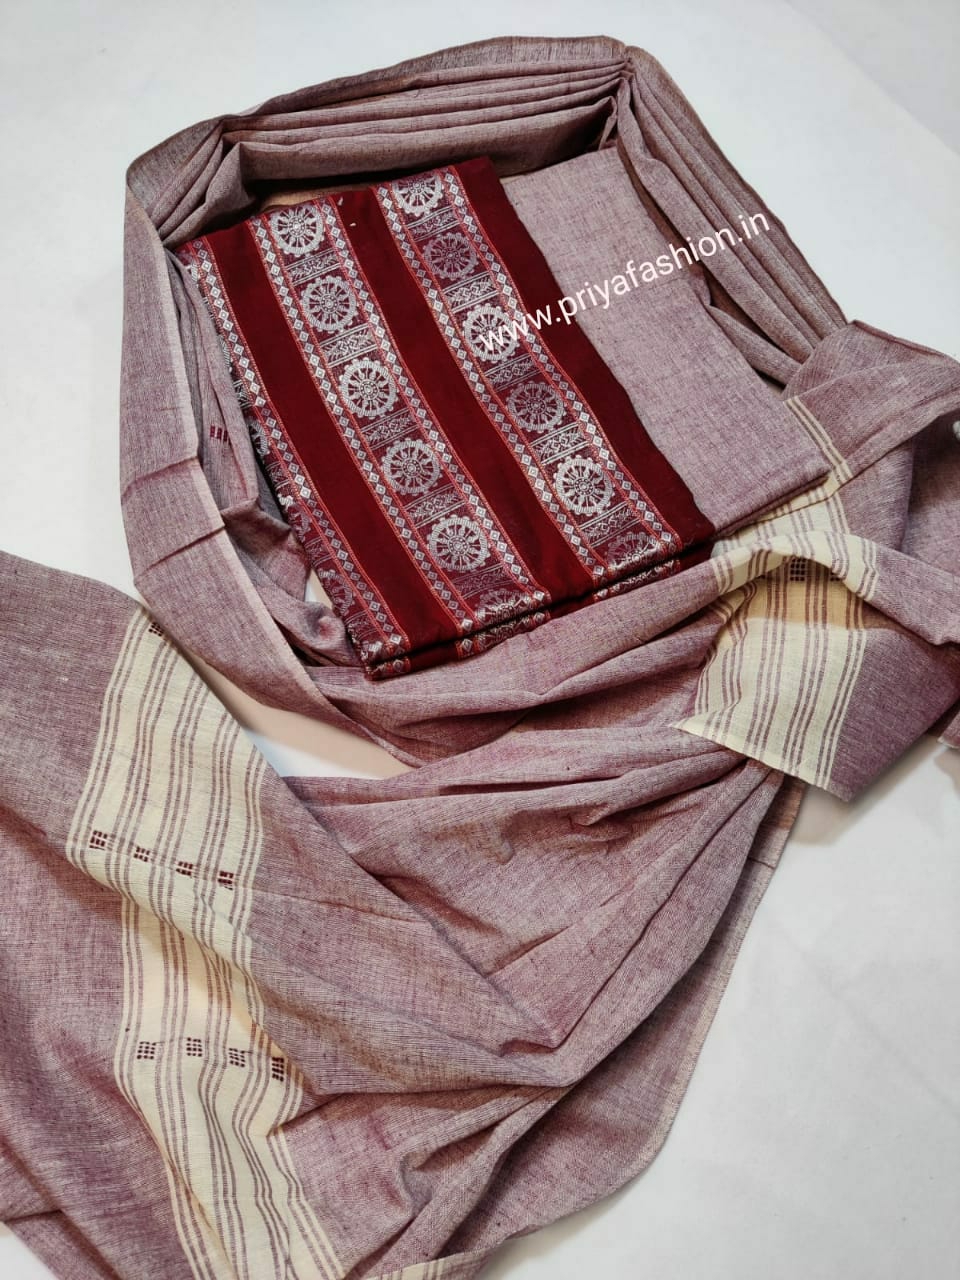 101448 Sambalpuri Dress Material With Stiching Size 32-42 Size - Dark Meroun, 36 Chest